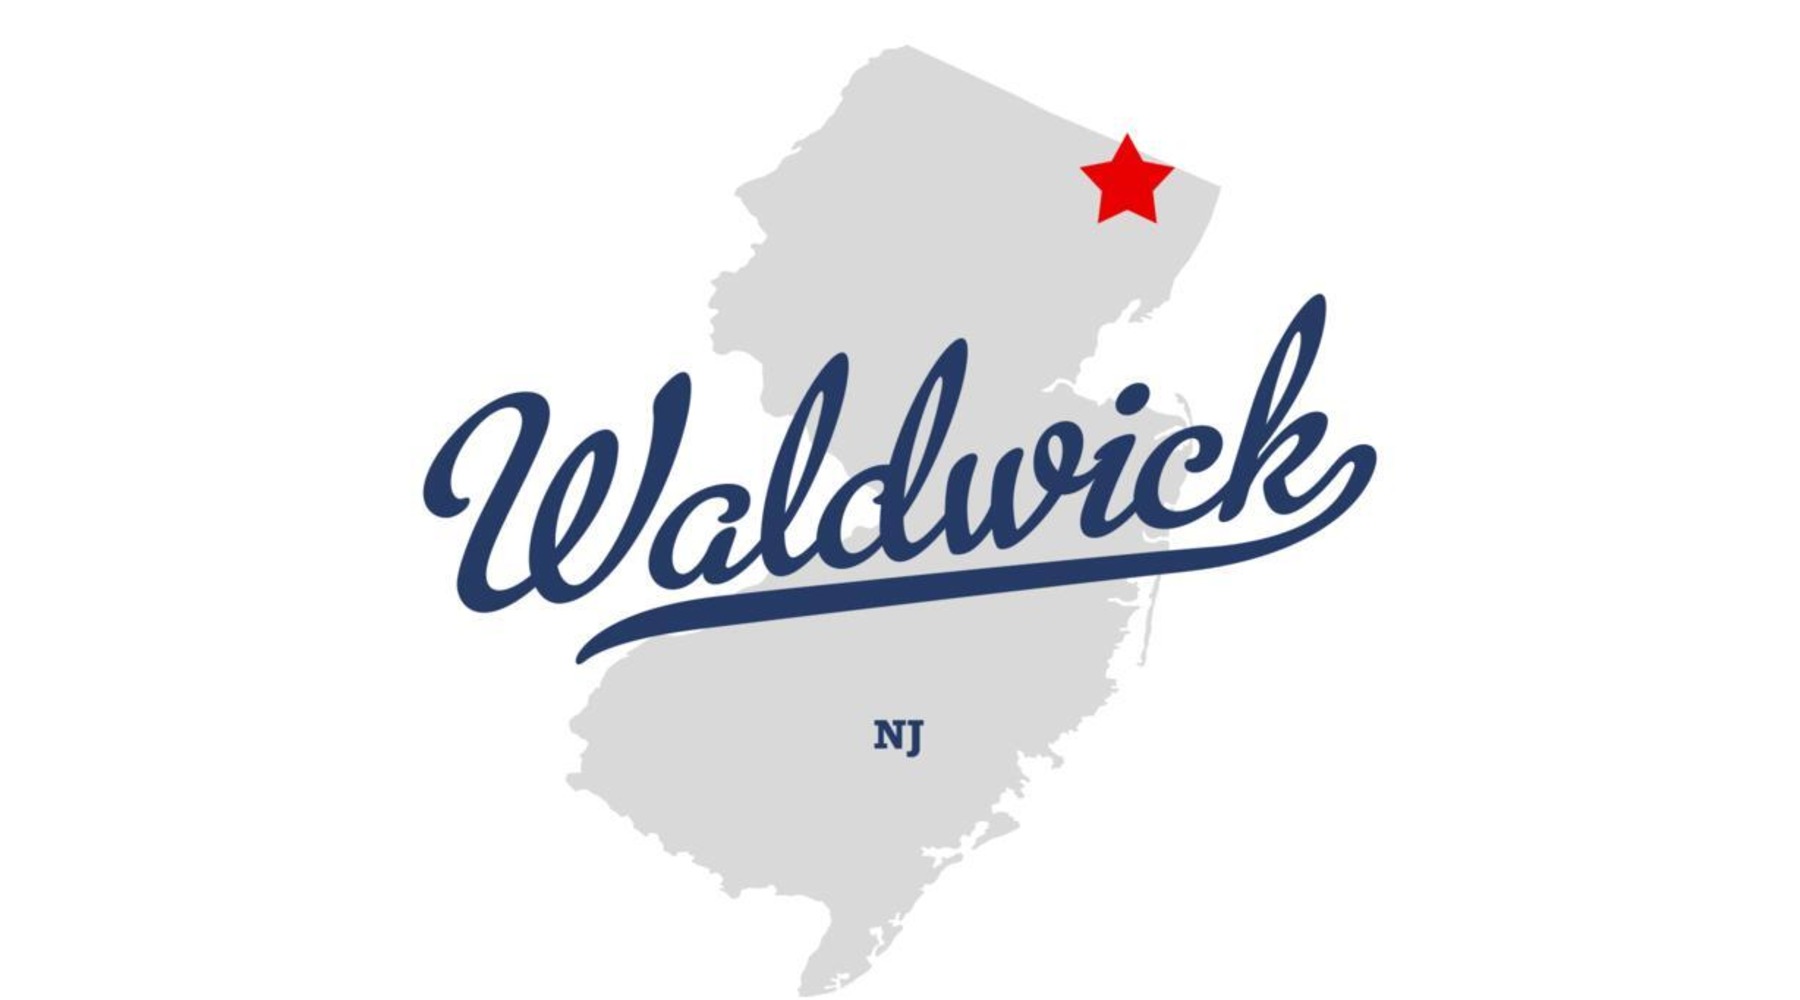 Waldwick